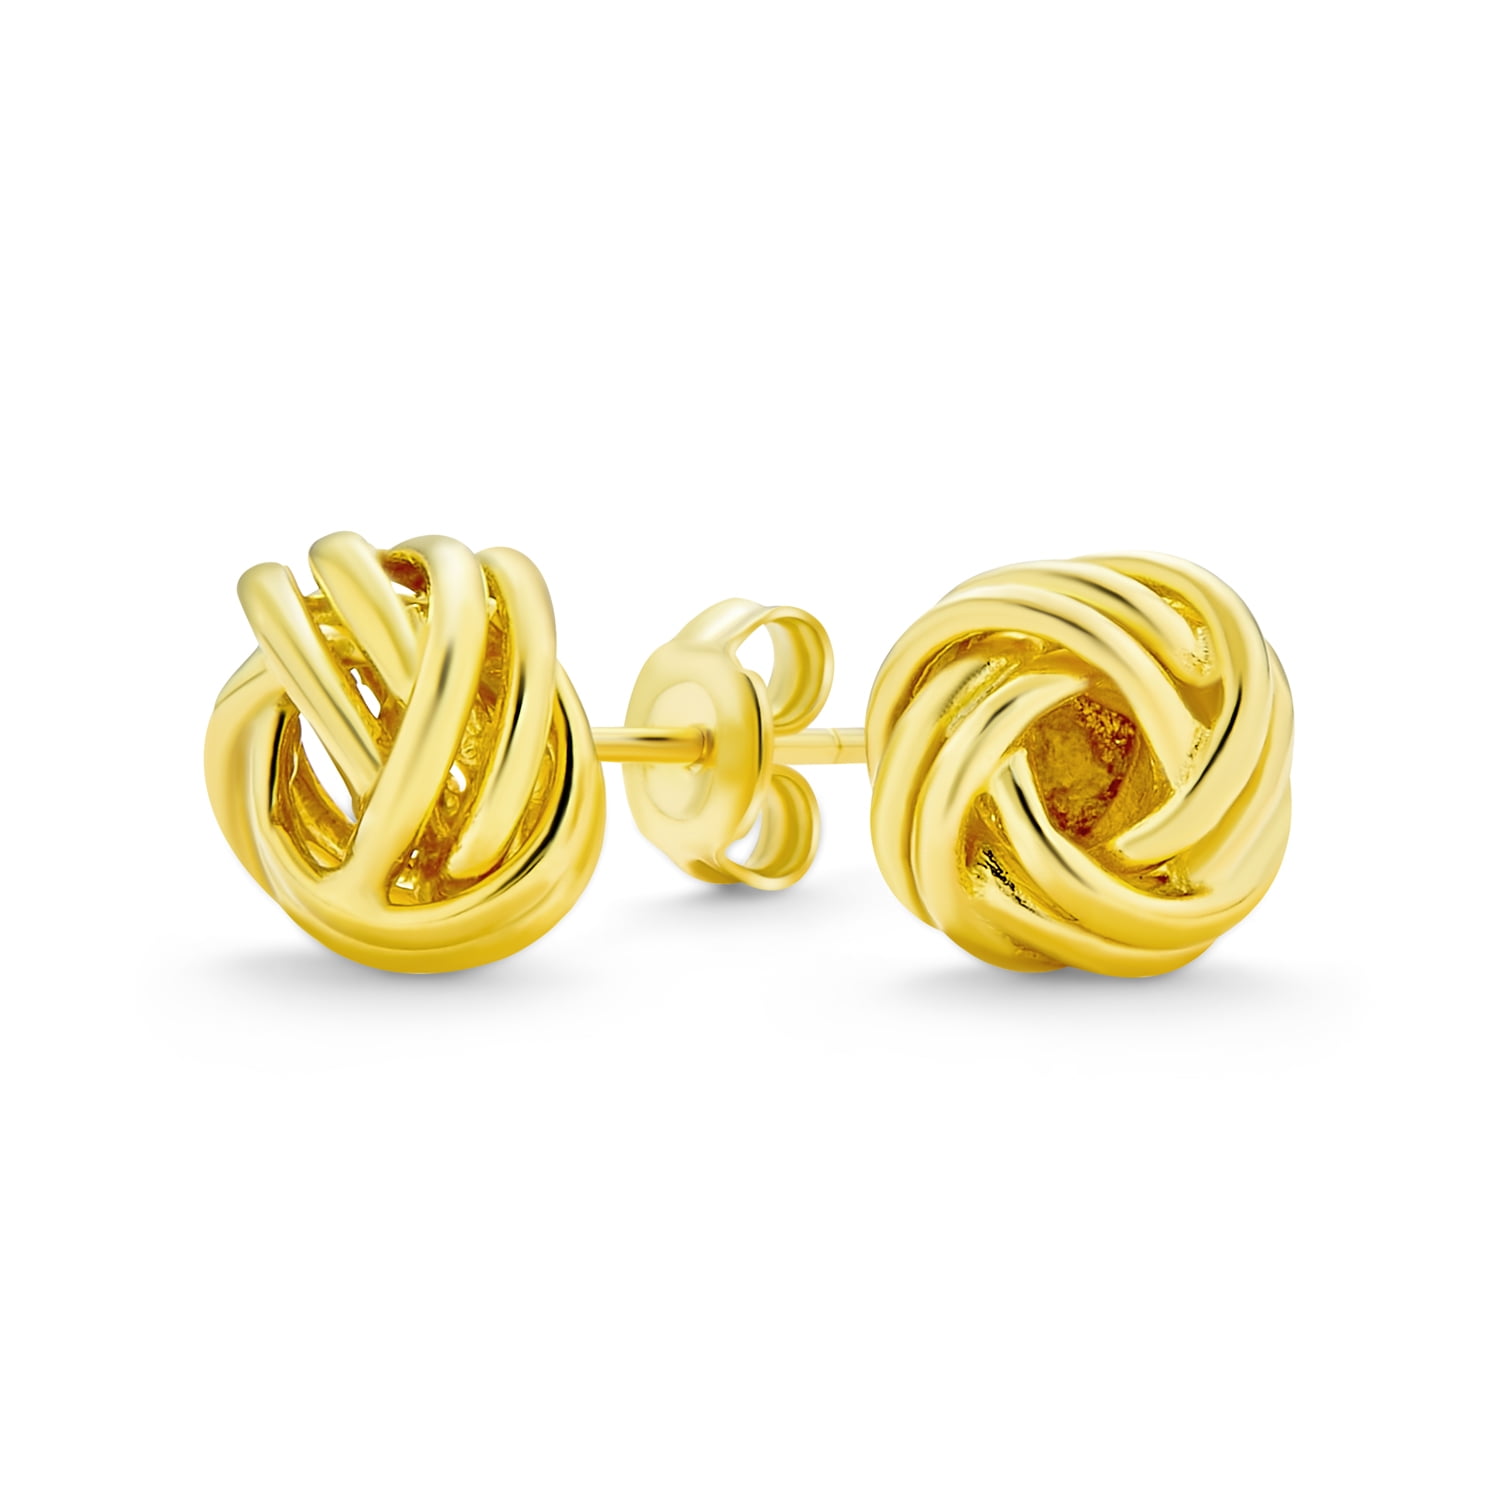 18k yellow gold 925 silver open hoop stud earrings twist rope pattern hoops 15mm 